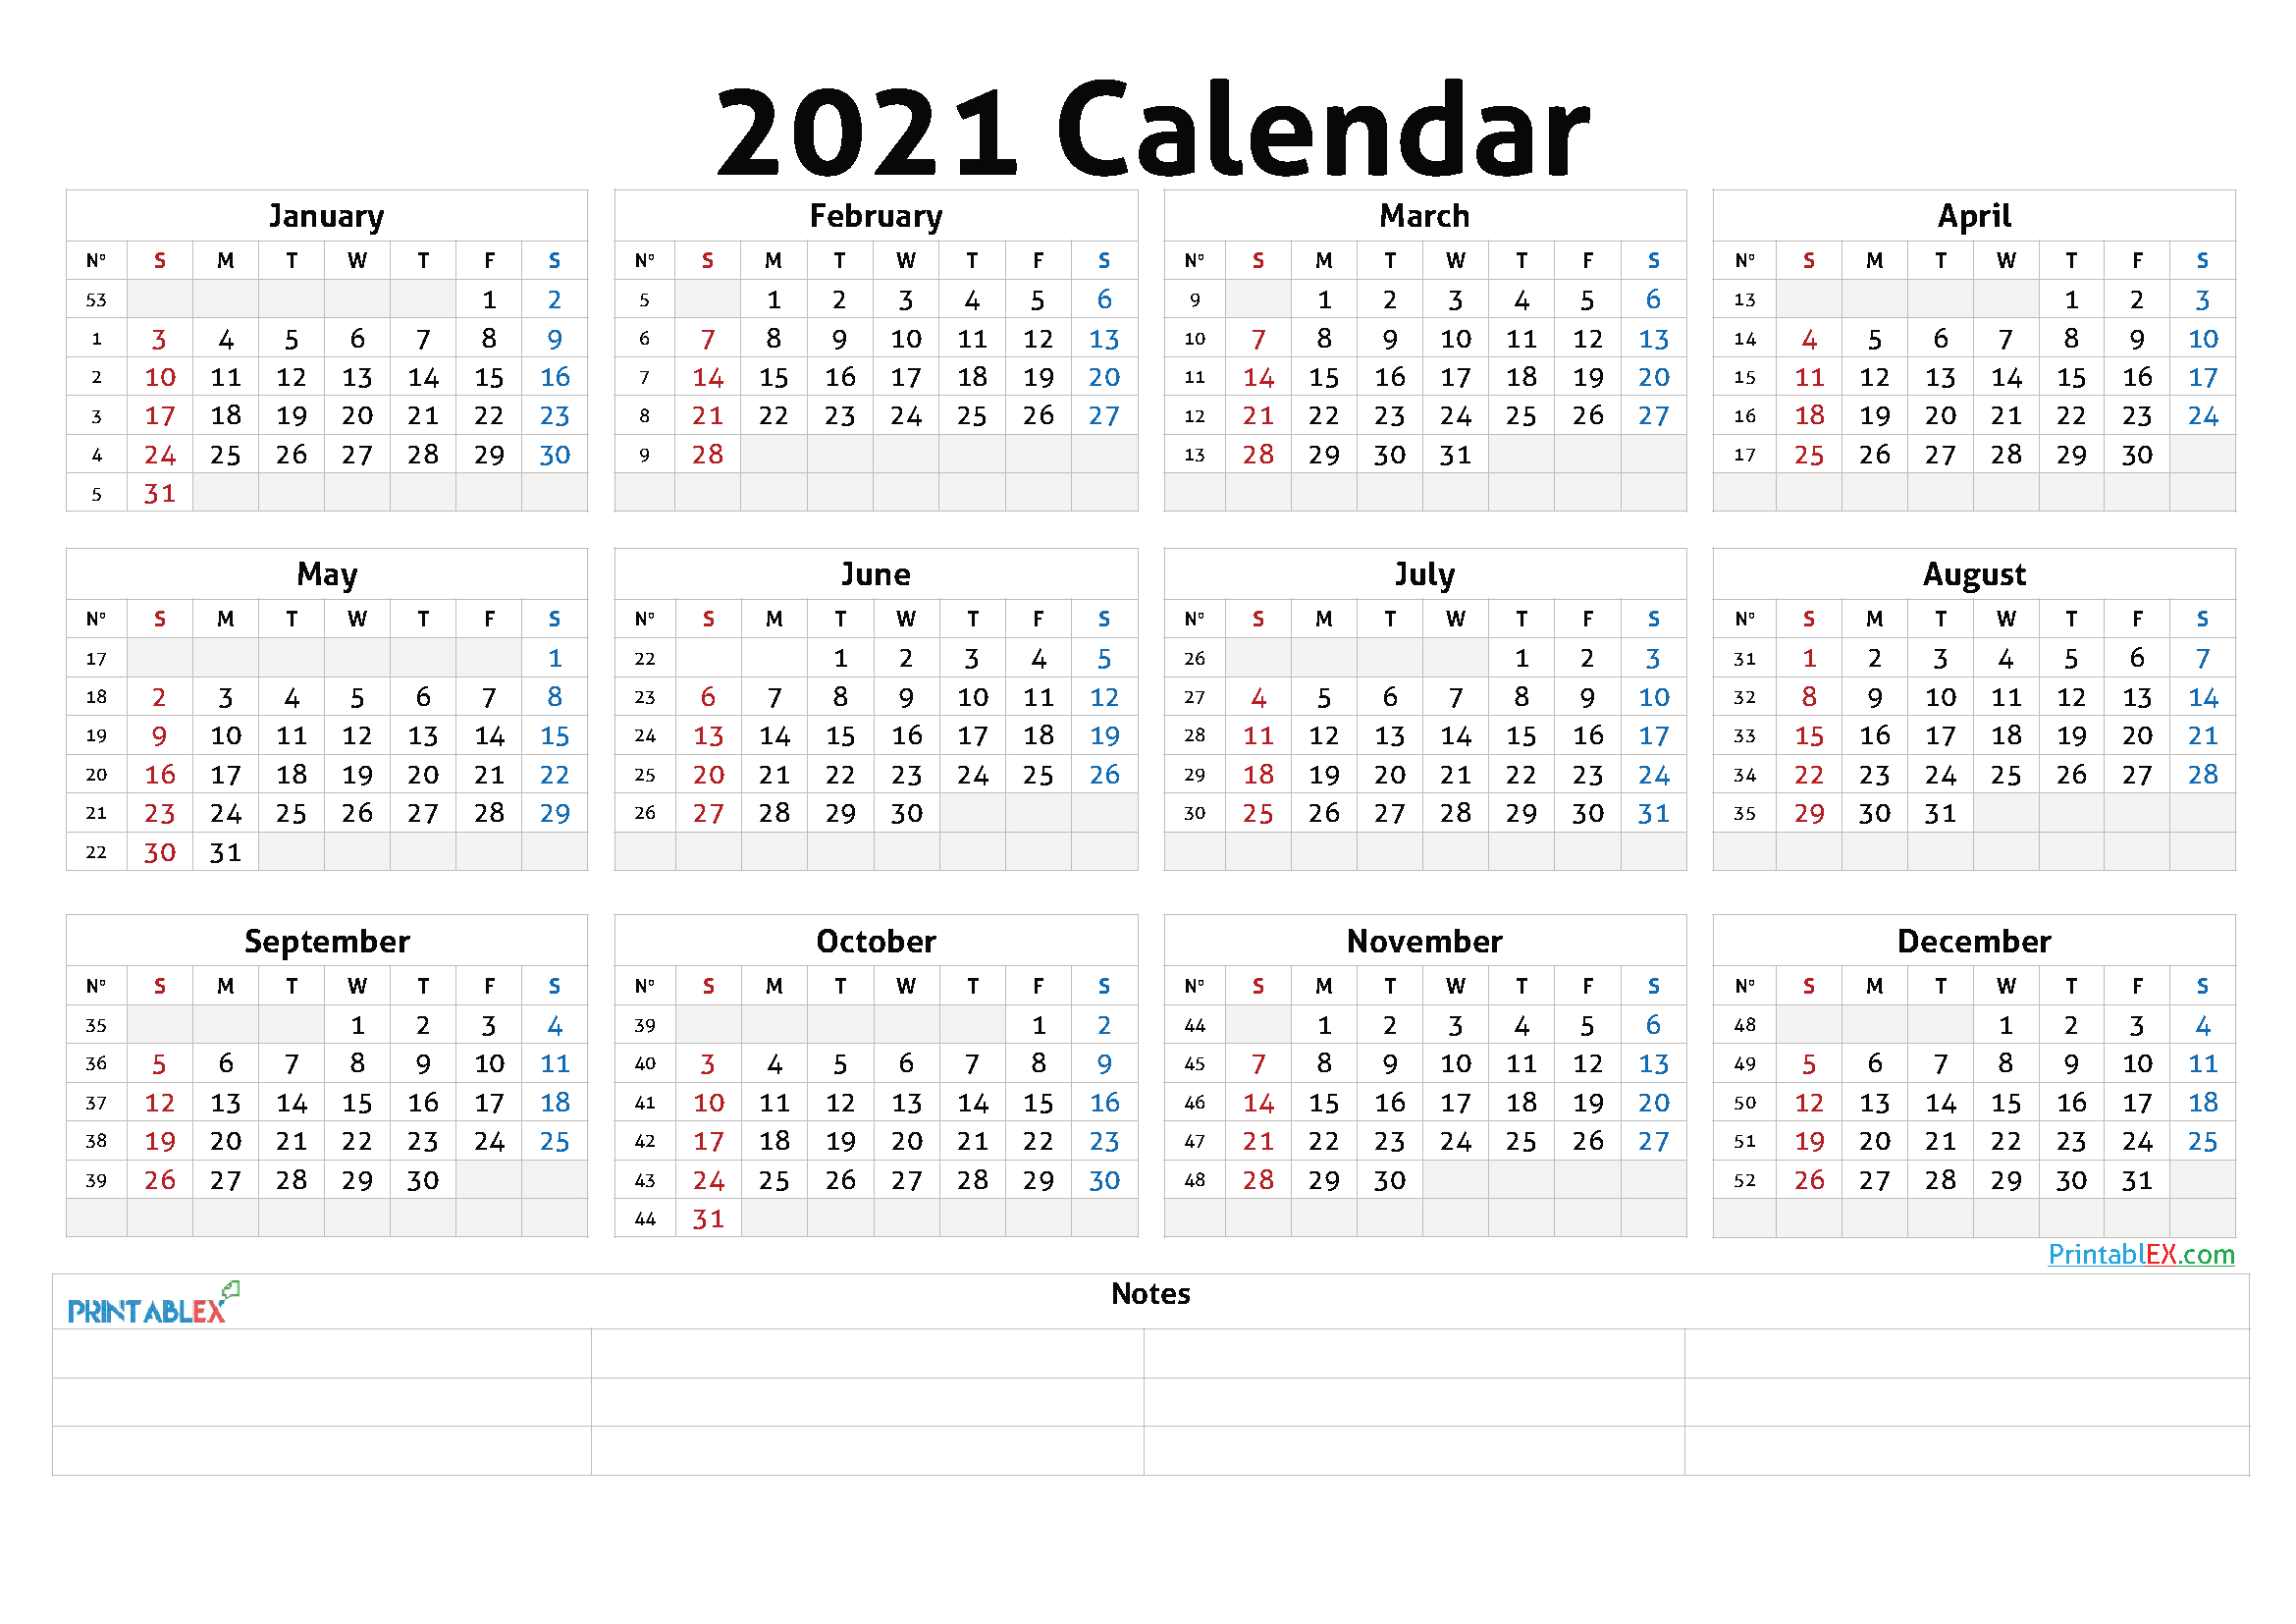 2021 Annual Calendar Printable - 21Ytw47